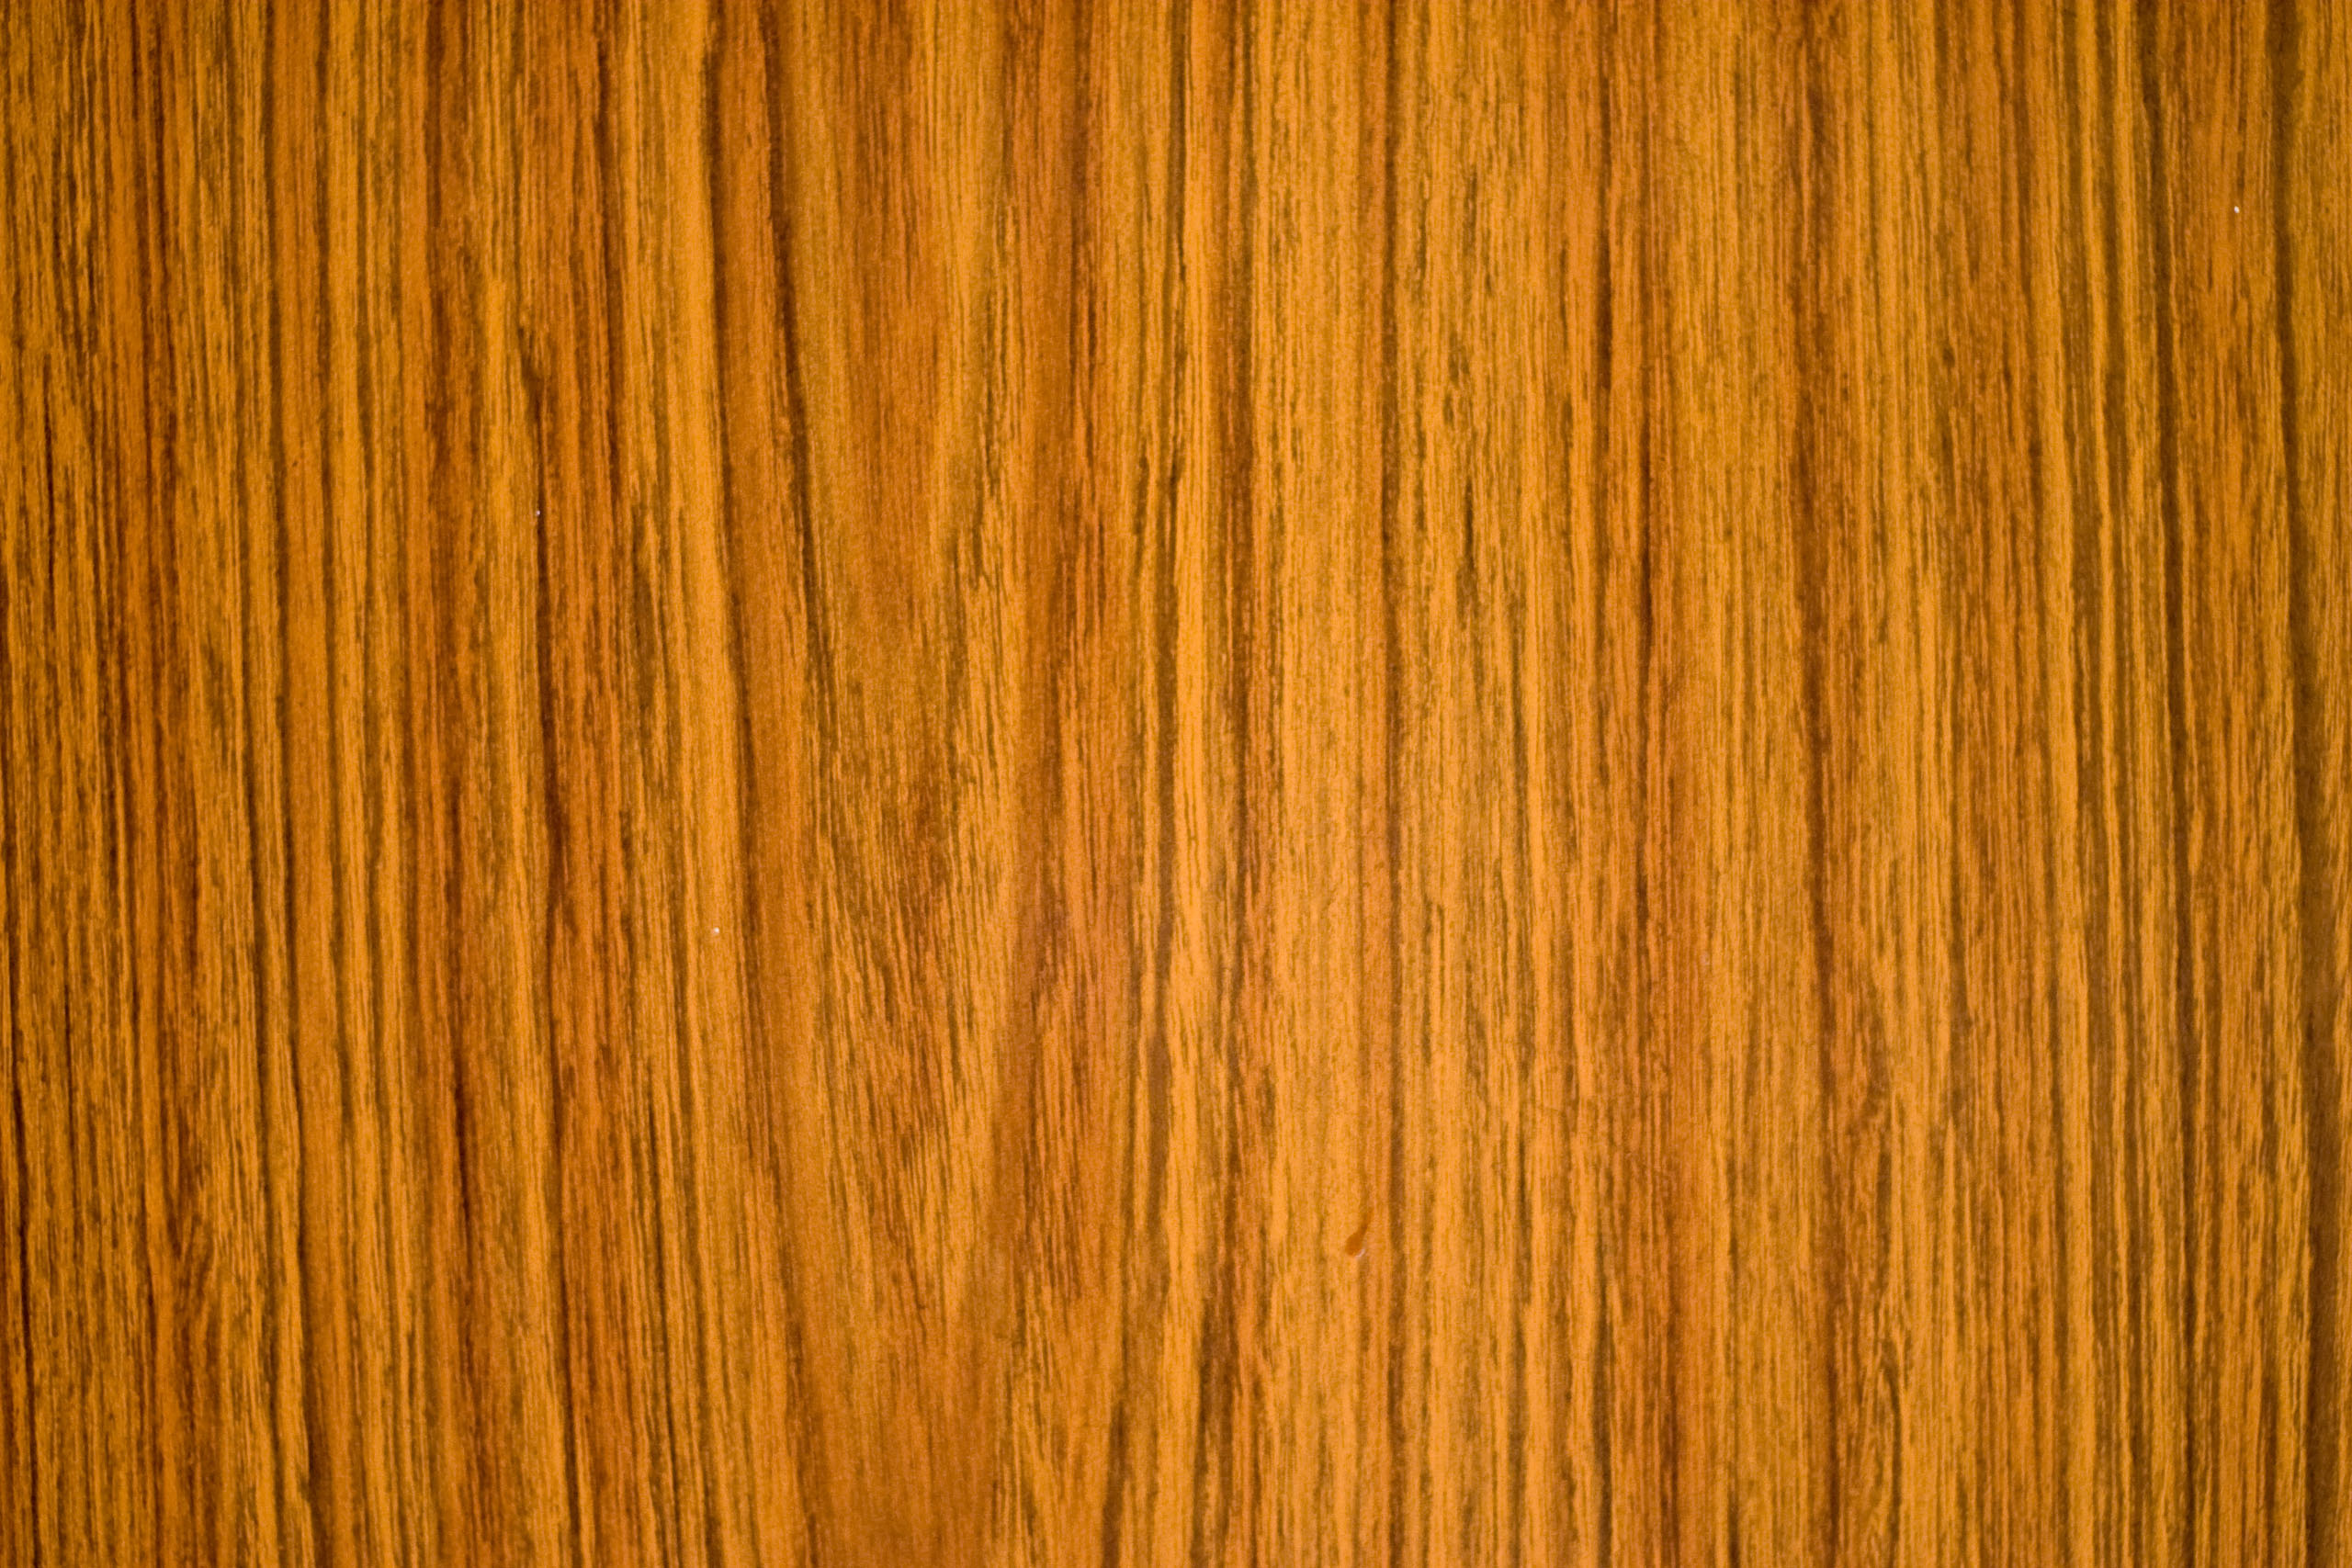 Wood Grain Desktop Background Image Pictures Becuo